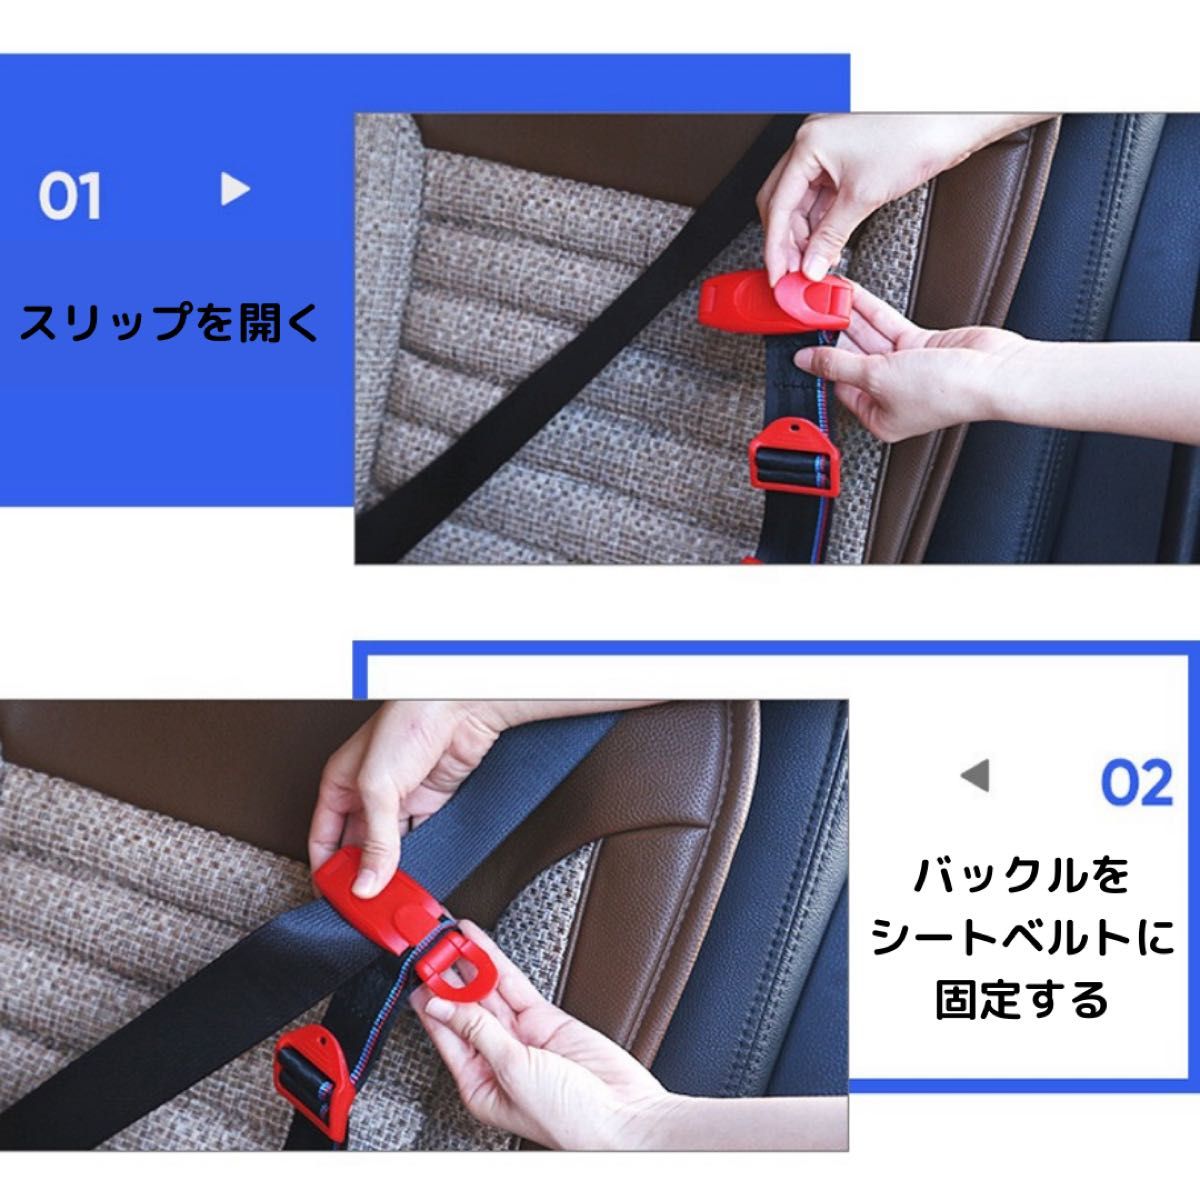 【再入荷】スマートキッズベルト 補助ベルト 青 チャイルドシート 安心 安全 Ｅマーク付き